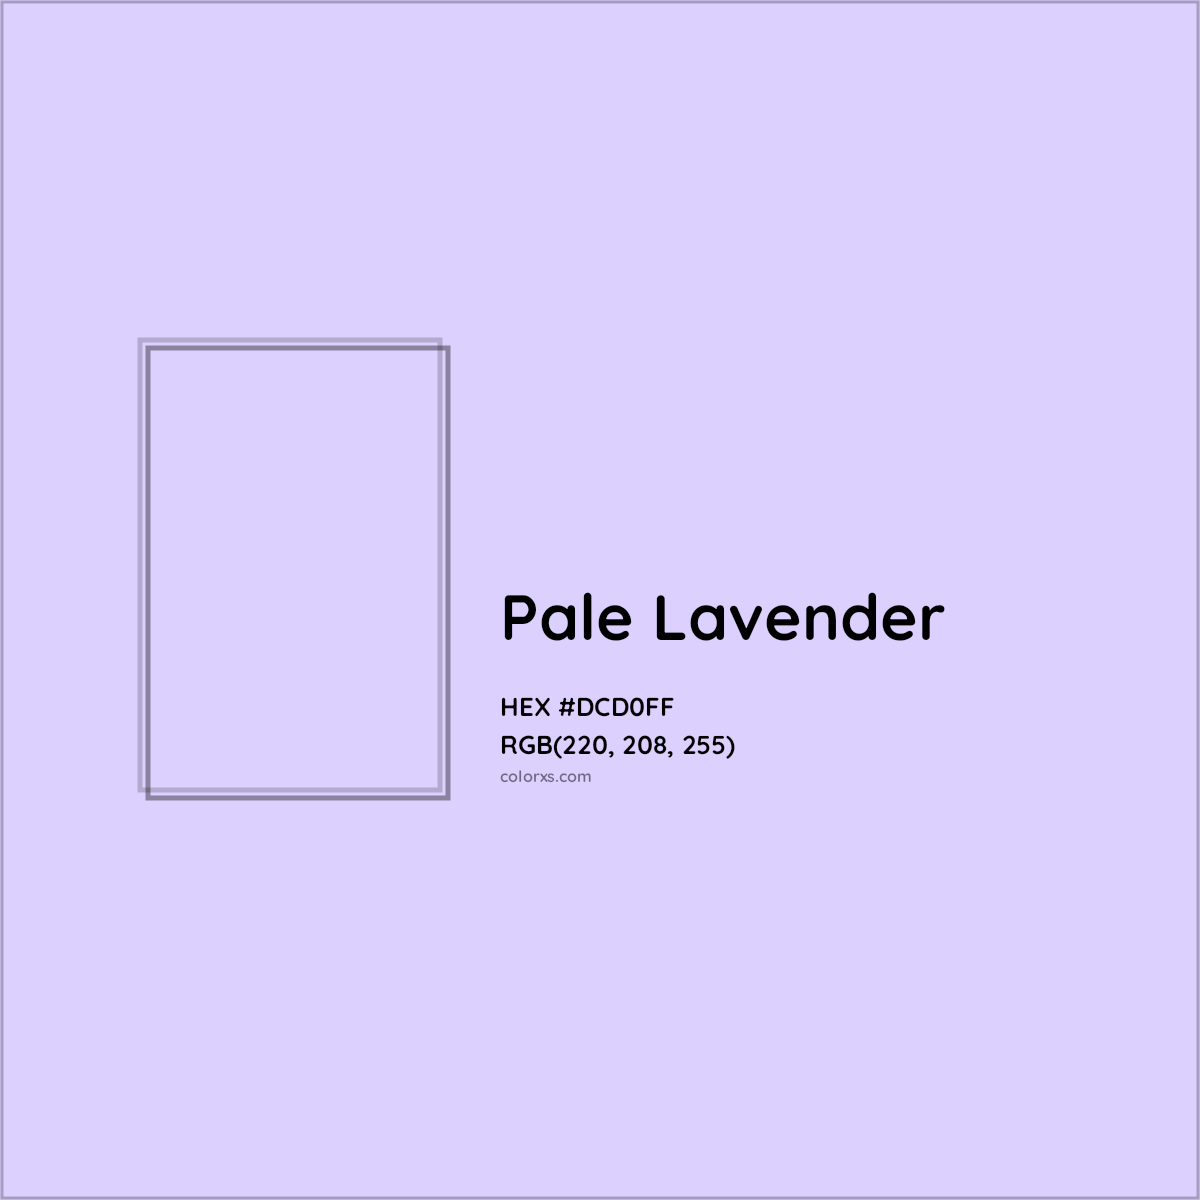 HEX #DCD0FF Pale Lavender Color - Color Code